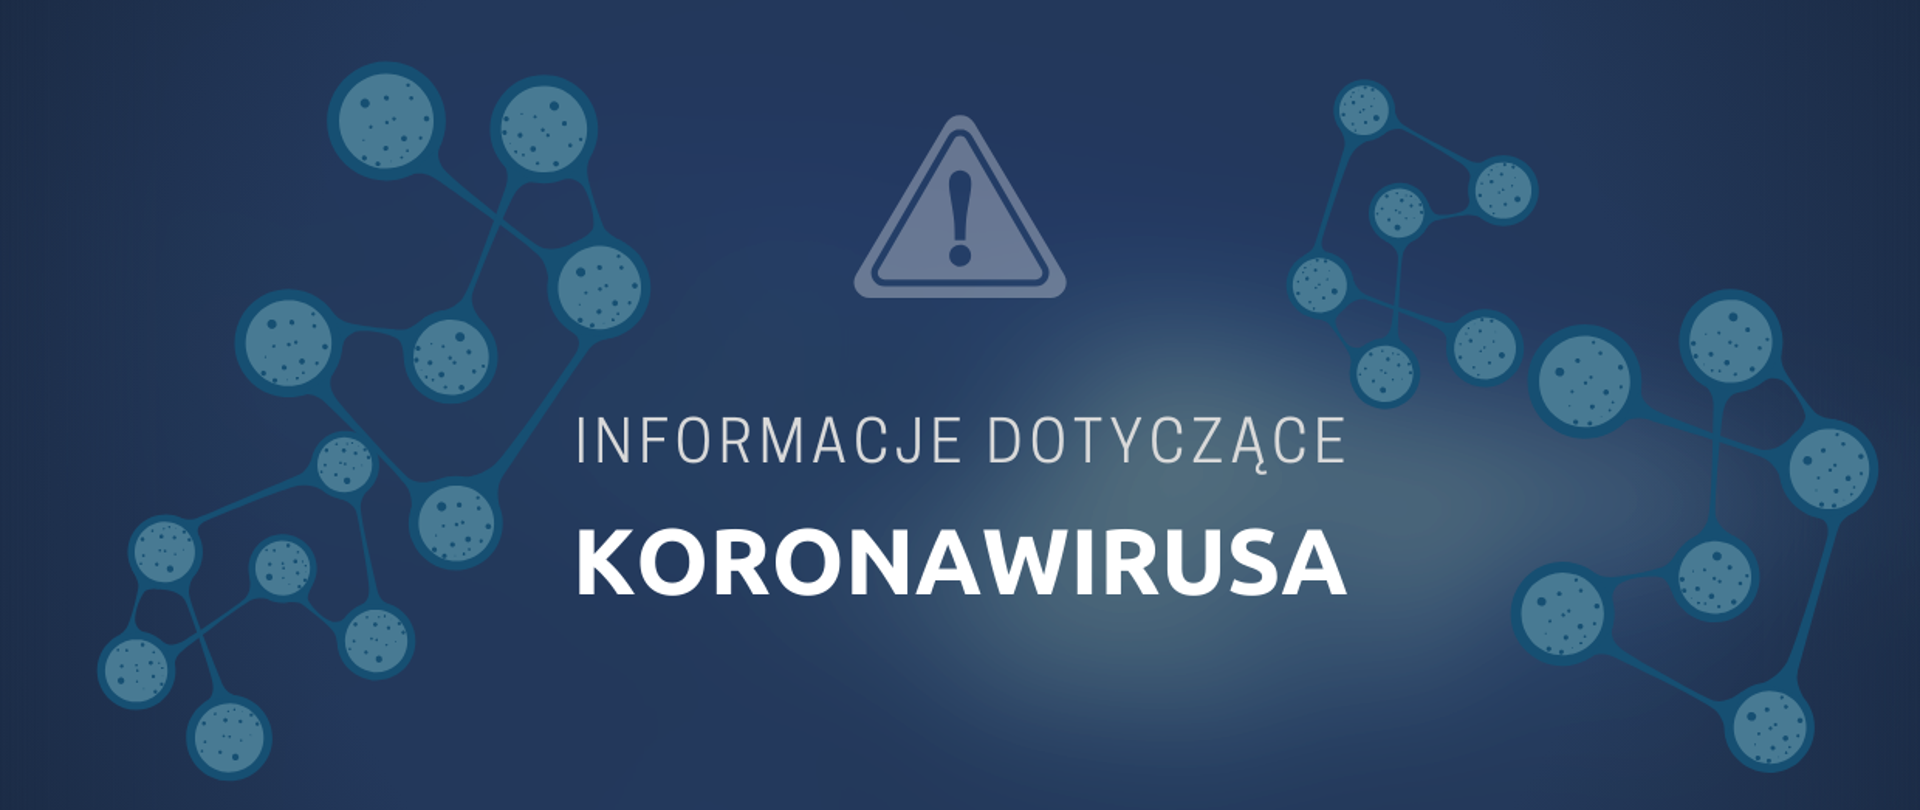 Sytuacja epidemiologiczna zakażeń SARS-CoV-2 w Łodzi i powiecie Łódzkim wschodnim na 20.04.2020r.